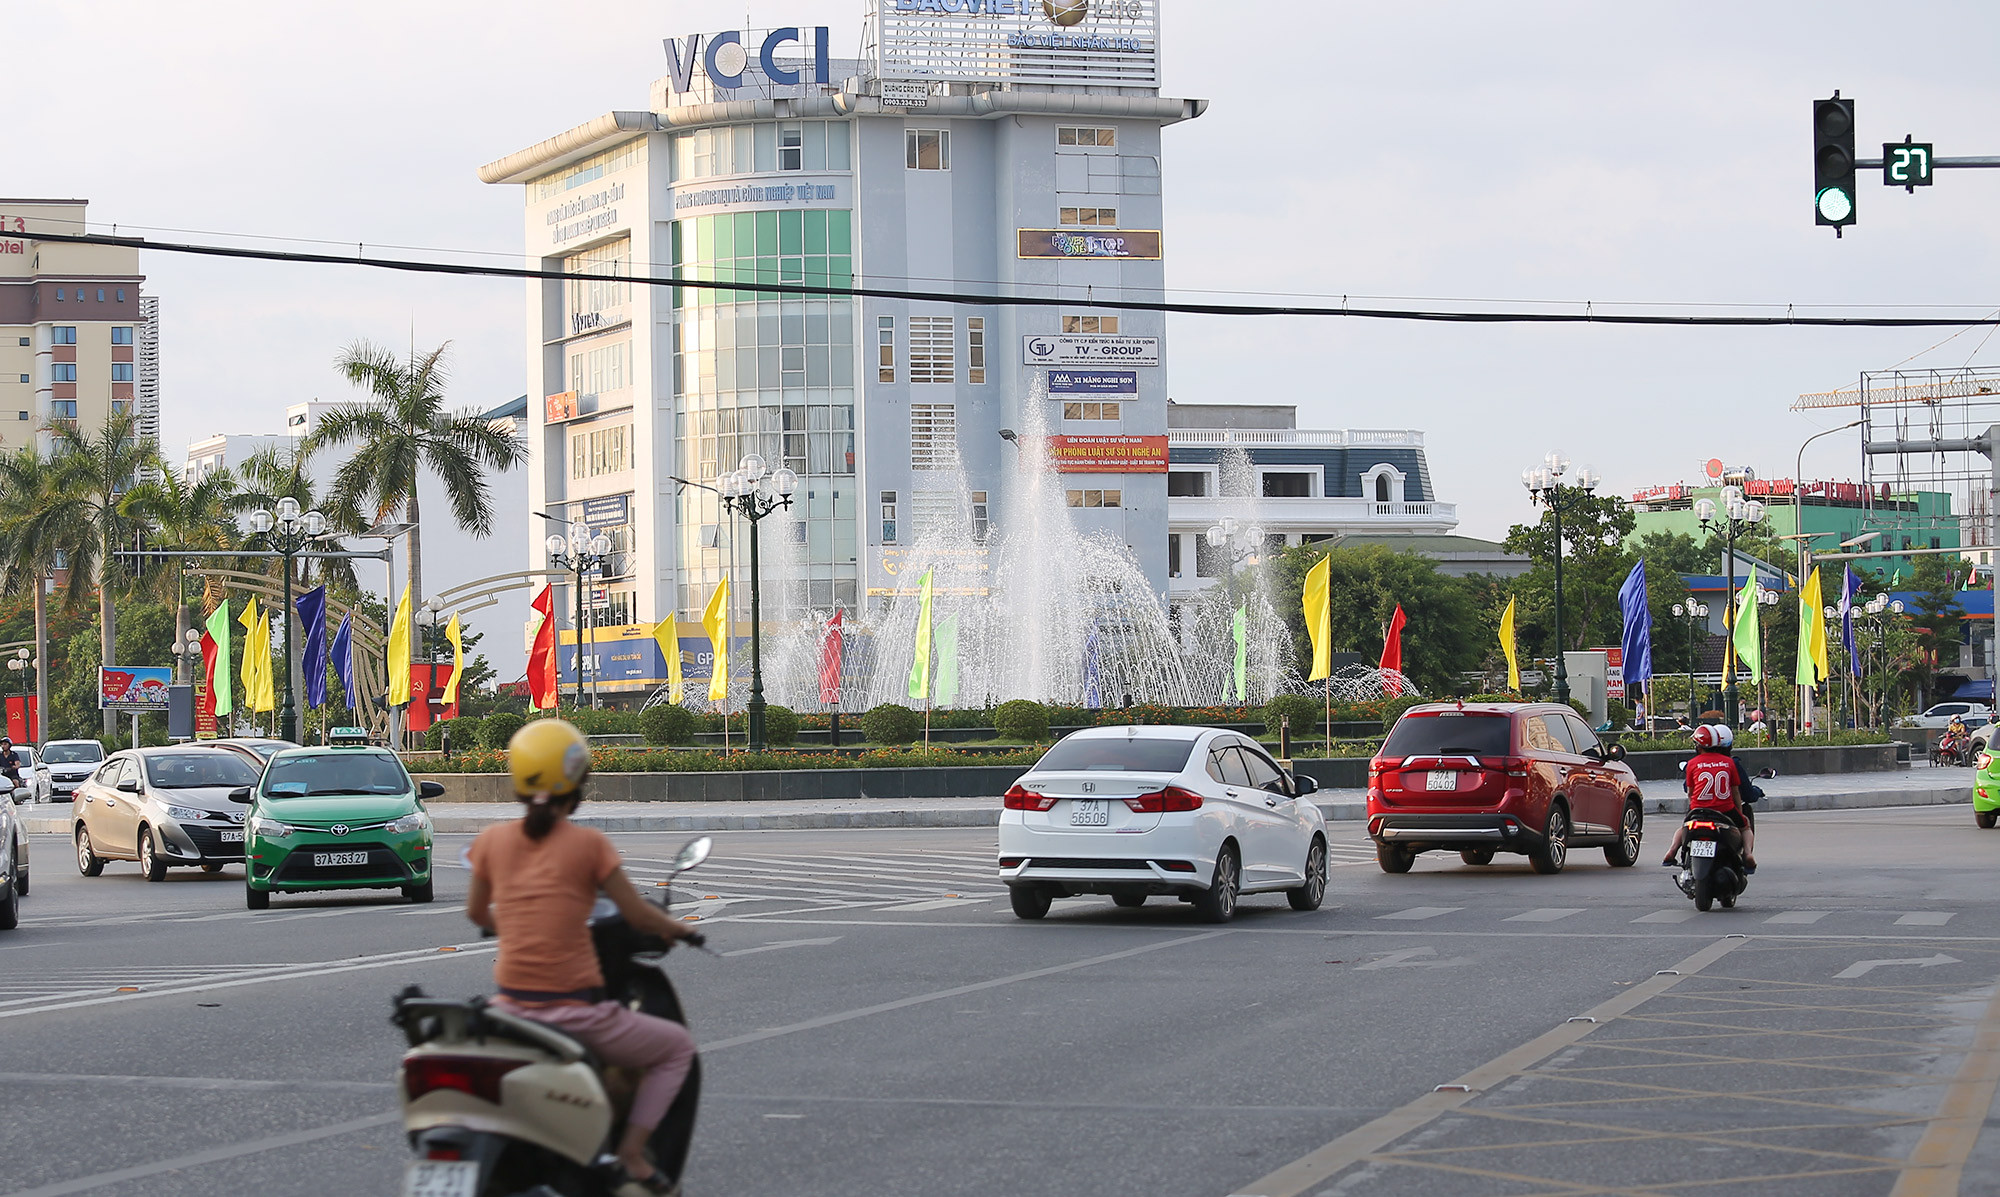 Đài phun nước tại vòng xuyến giao giữa Đại lô Lê nin và đường Trường Thi, đường Nguyễn Phong Sắc hoạt động, thu hút sự chú ý của người dân khi đi qua đây. Ảnh: Lâm Tùng